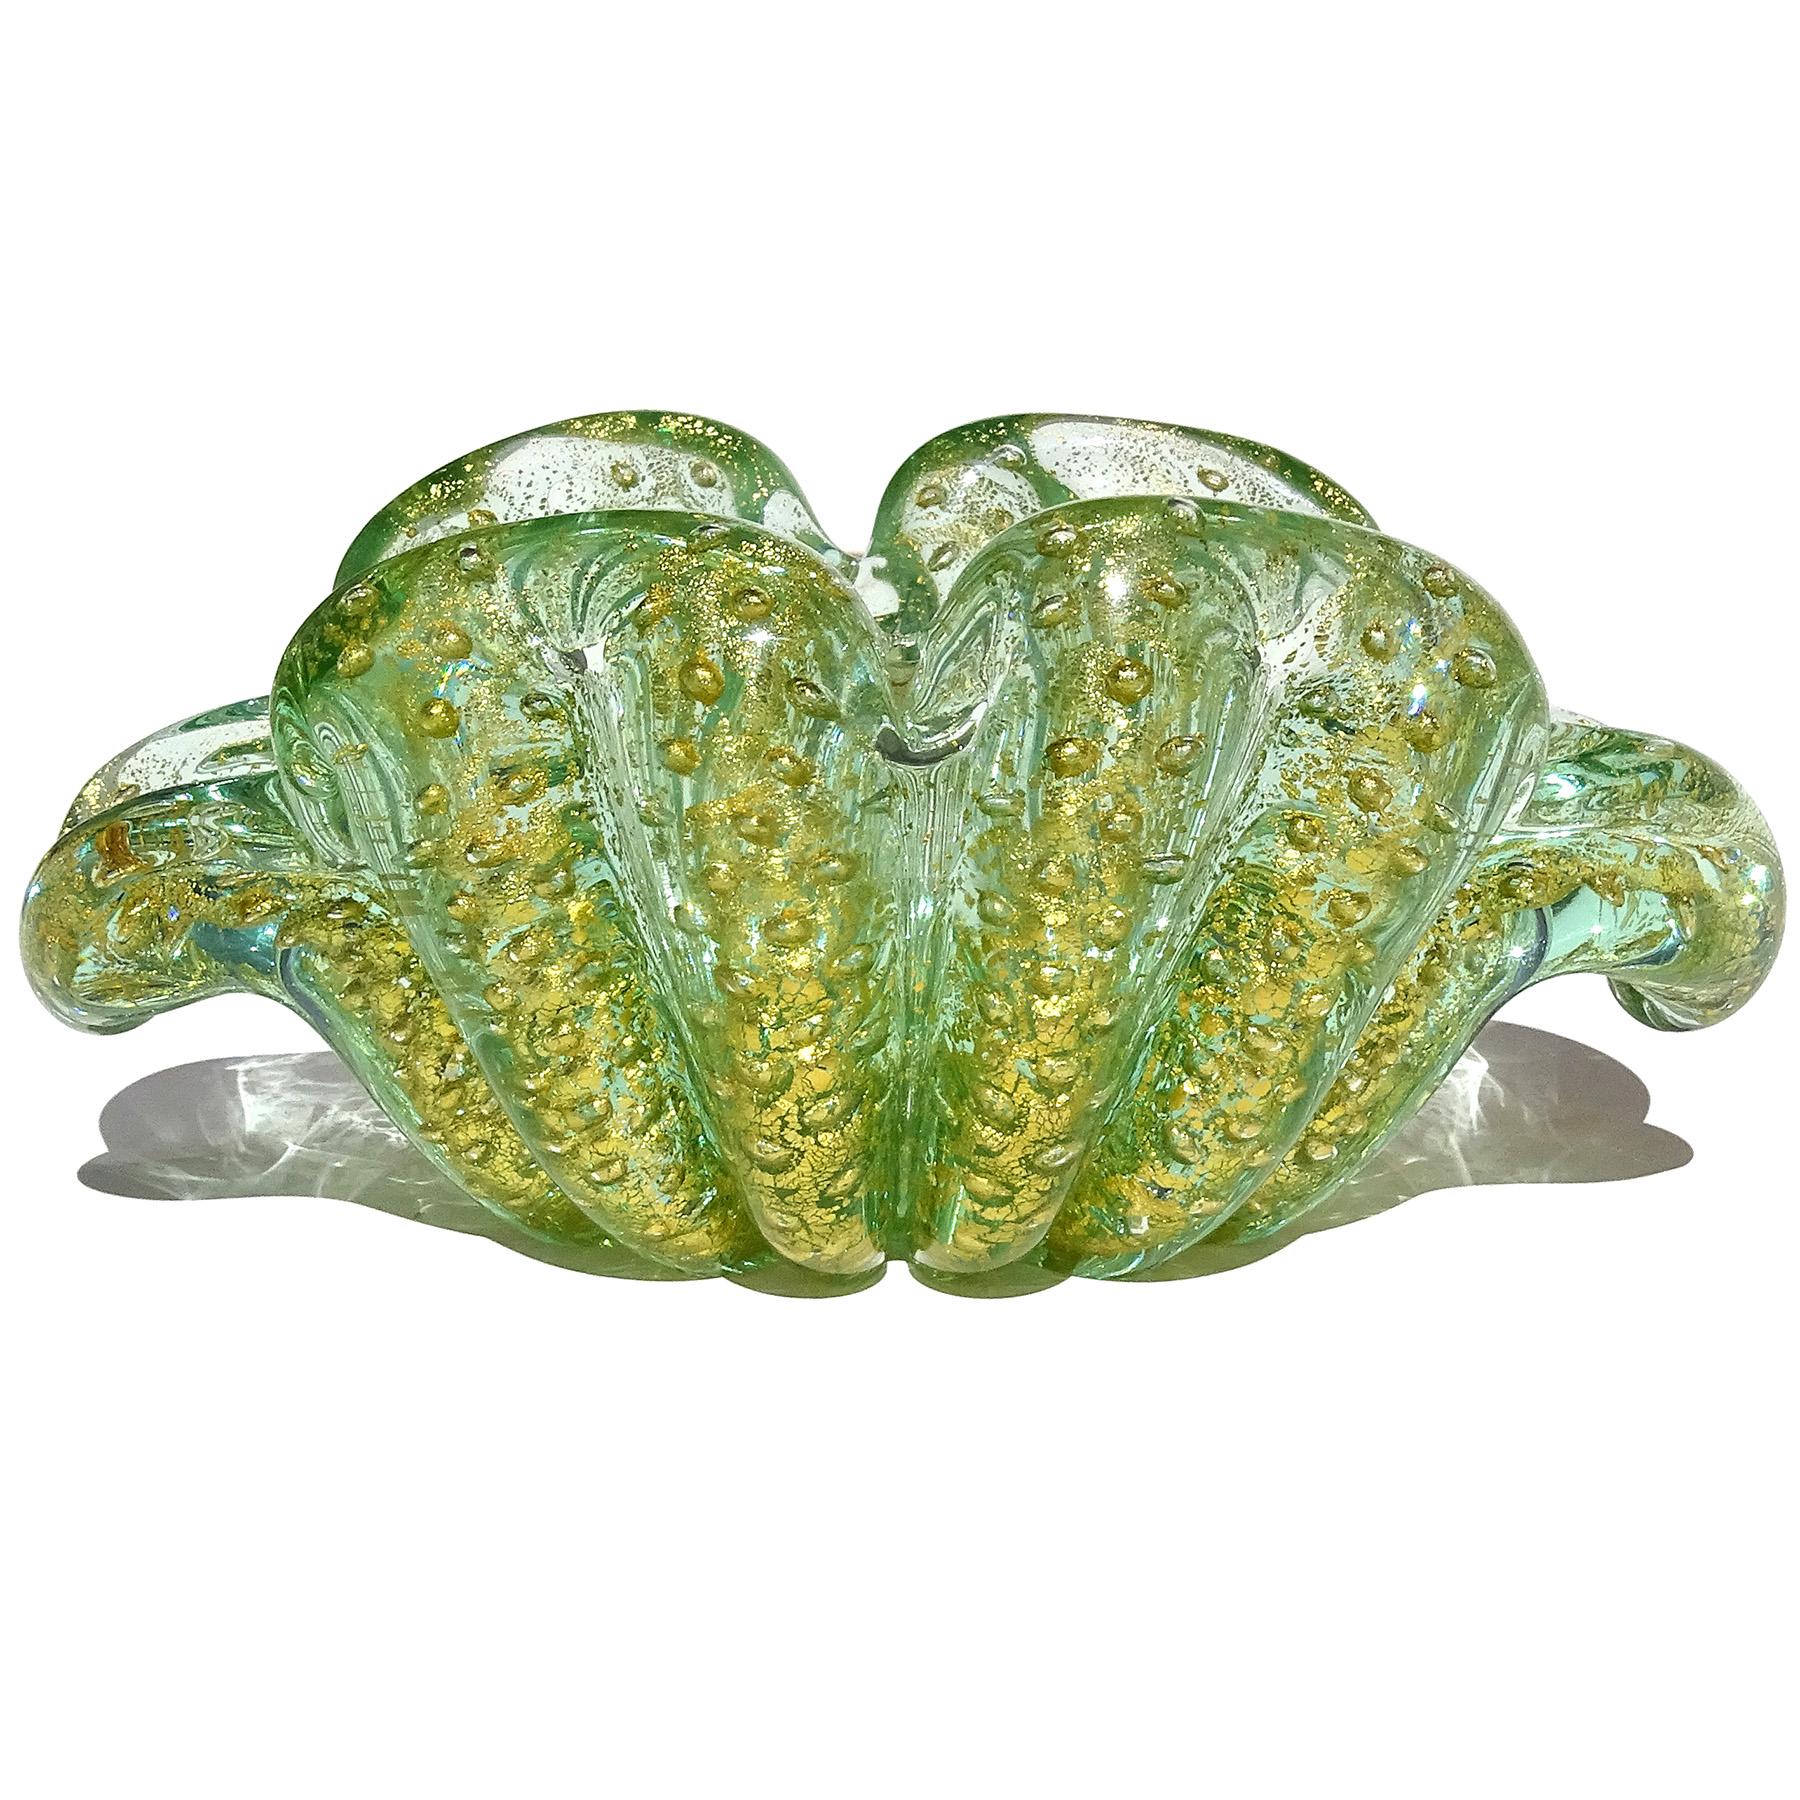 Wunderschöne Vintage Murano mundgeblasen grün, Blasen und Goldflecken italienische Kunst Glas Blume Form Schüssel. Dokumentiert für den Designer Ercole Barovier für die Firma Barovier e Toso. Die Farbe ist ein transparentes Grün, mit einer